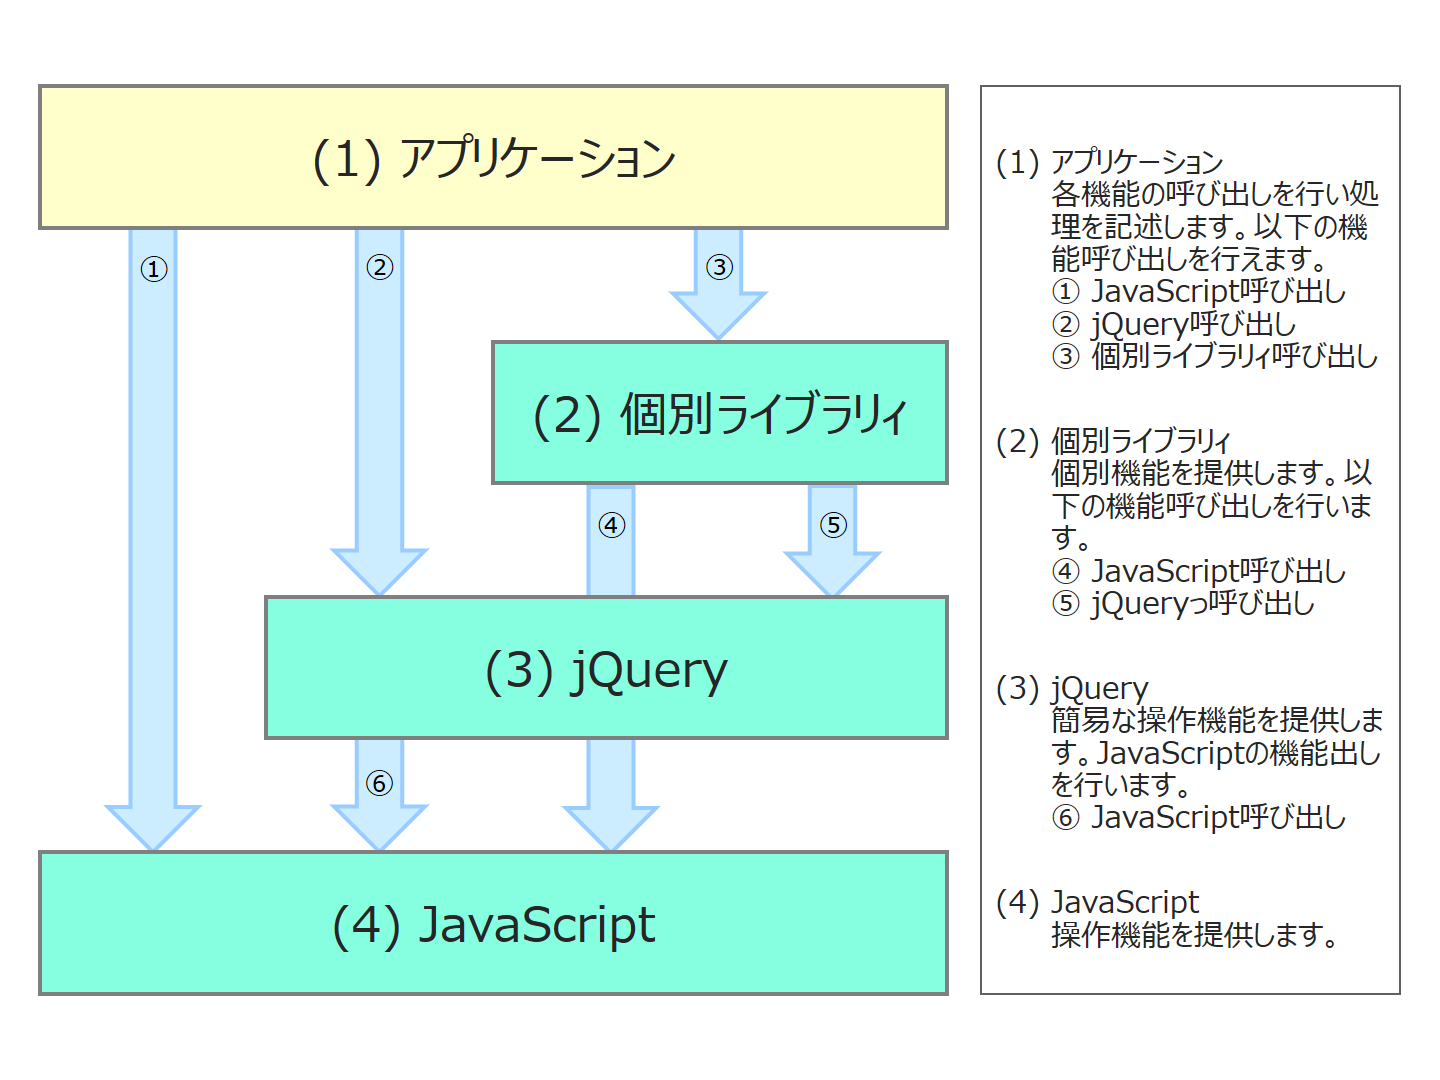 JavScript/jQueryの関係